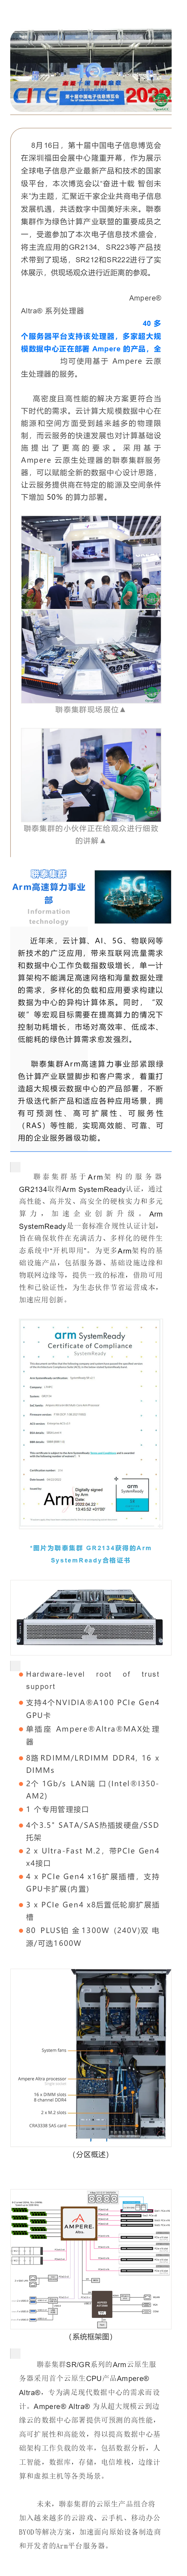 联泰集群Arm架构产品亮相第十届中国电子信息博览会